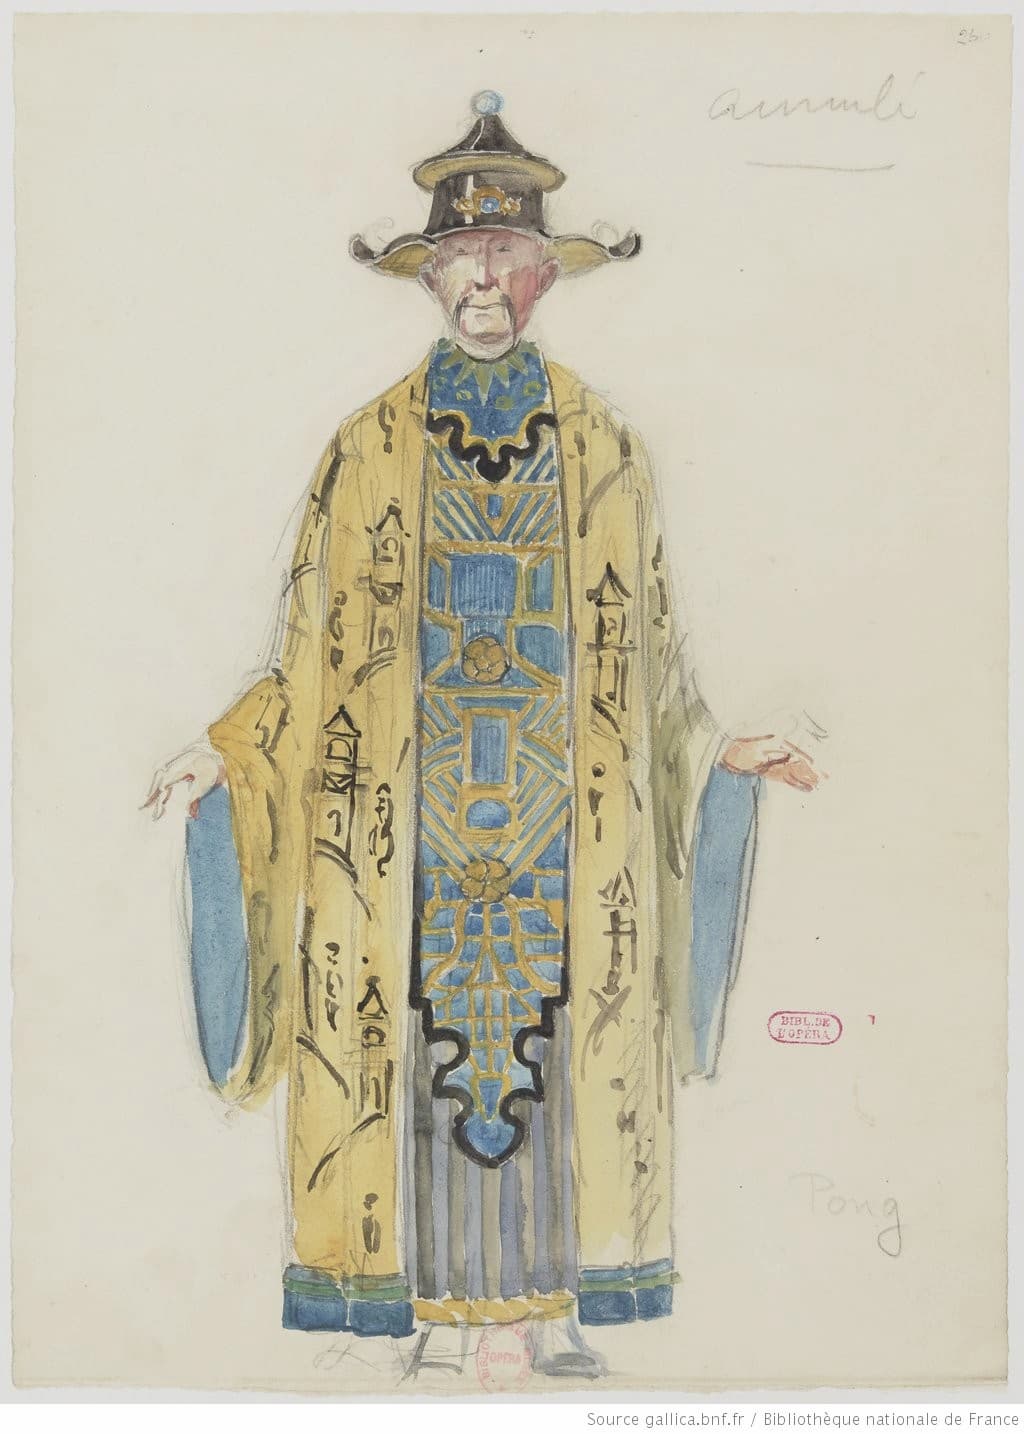 Drésa: Turandot, Pong - rejected, 1928 (Gallica ark:/12148/btv1b10524258f)